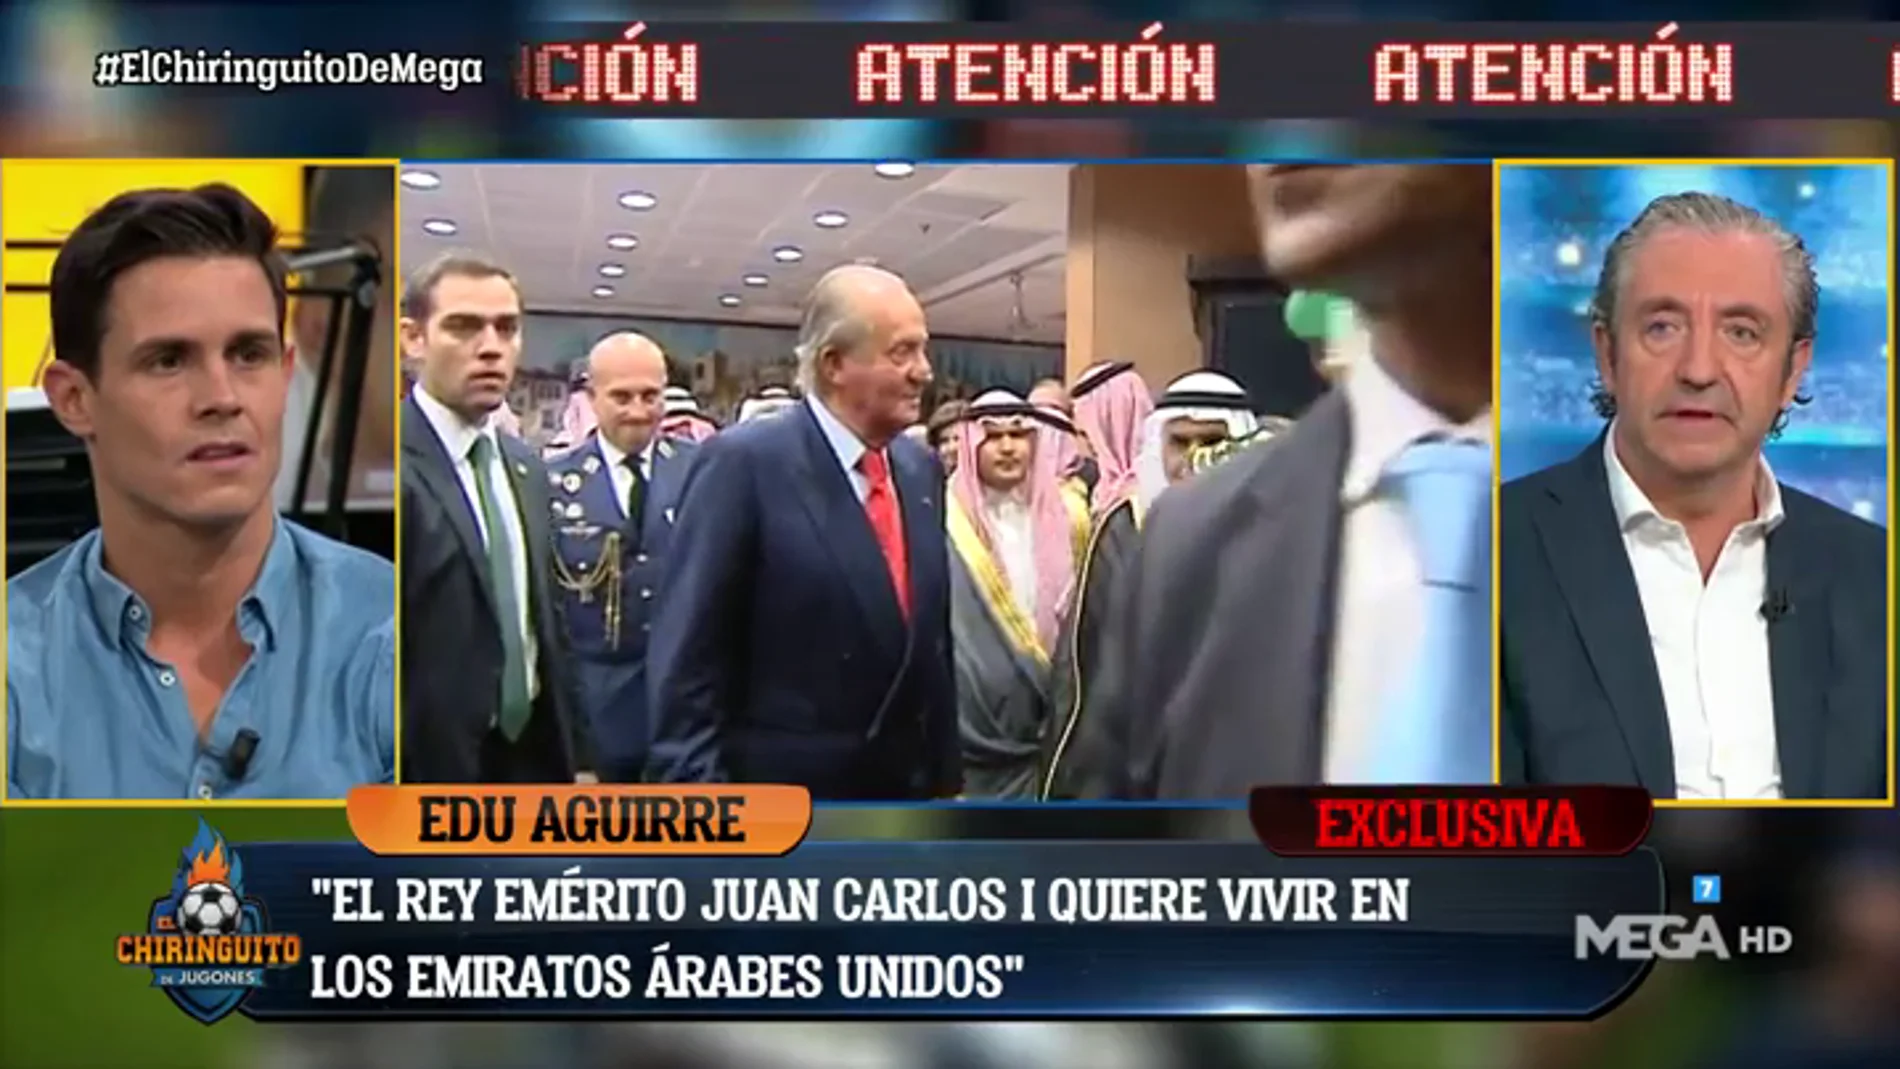 EDU AGUIRRE: "La idea de Juan Carlos I es vivir en los Emiratos Árabes"